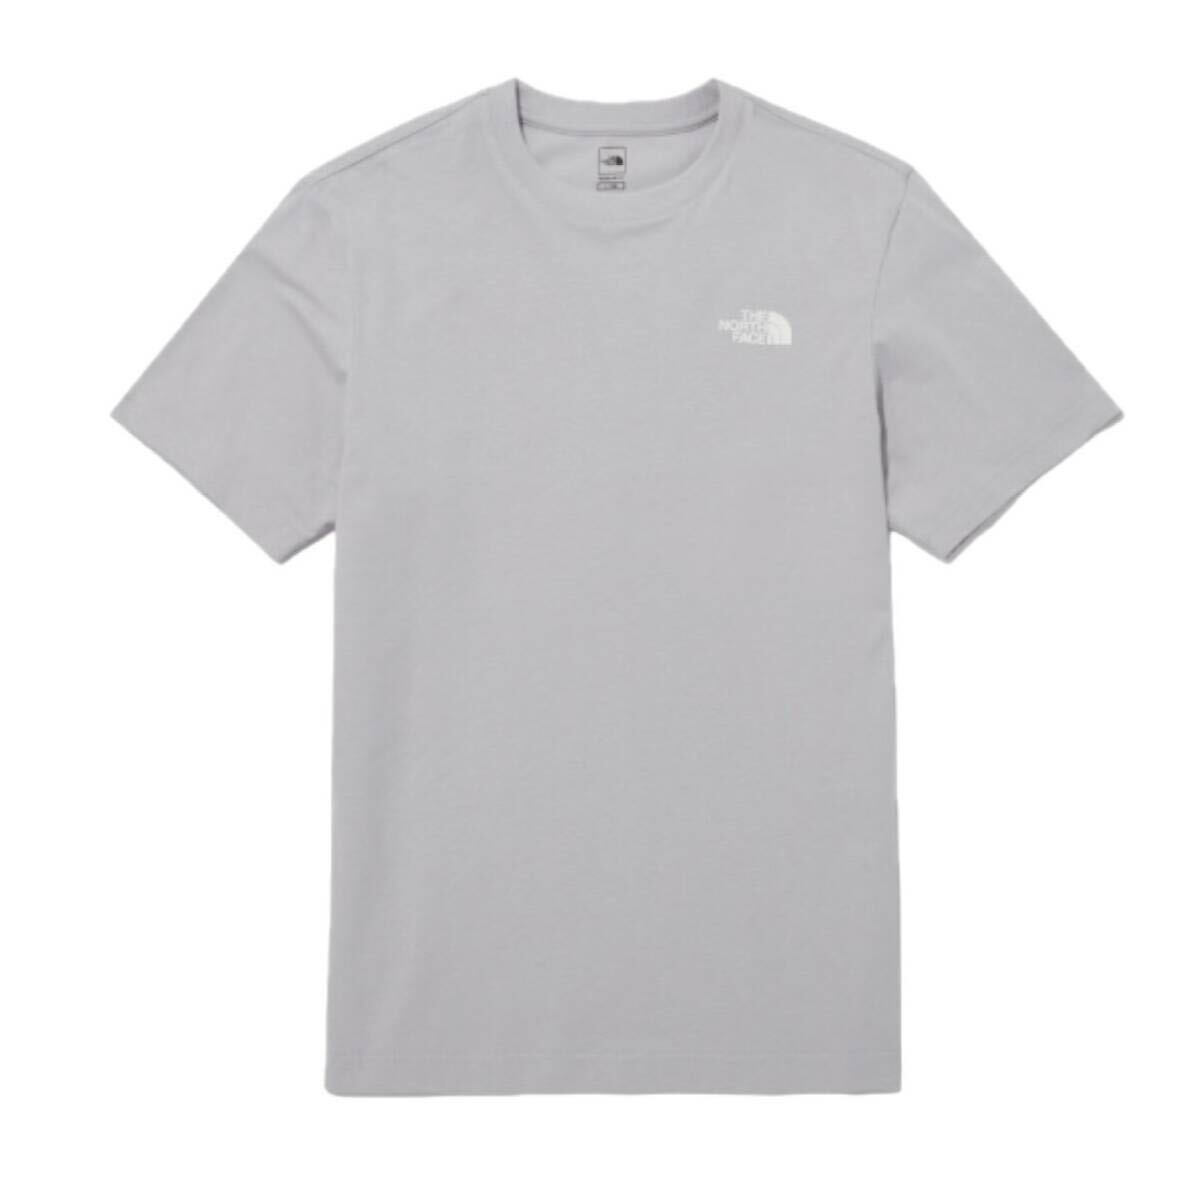 ザ ノースフェイス Tシャツ NT7U ライトグレー Mサイズ コットン素材 クルーネック シンプルロゴ THE NORTH FACE COTTON S/S TEE 新品の画像4